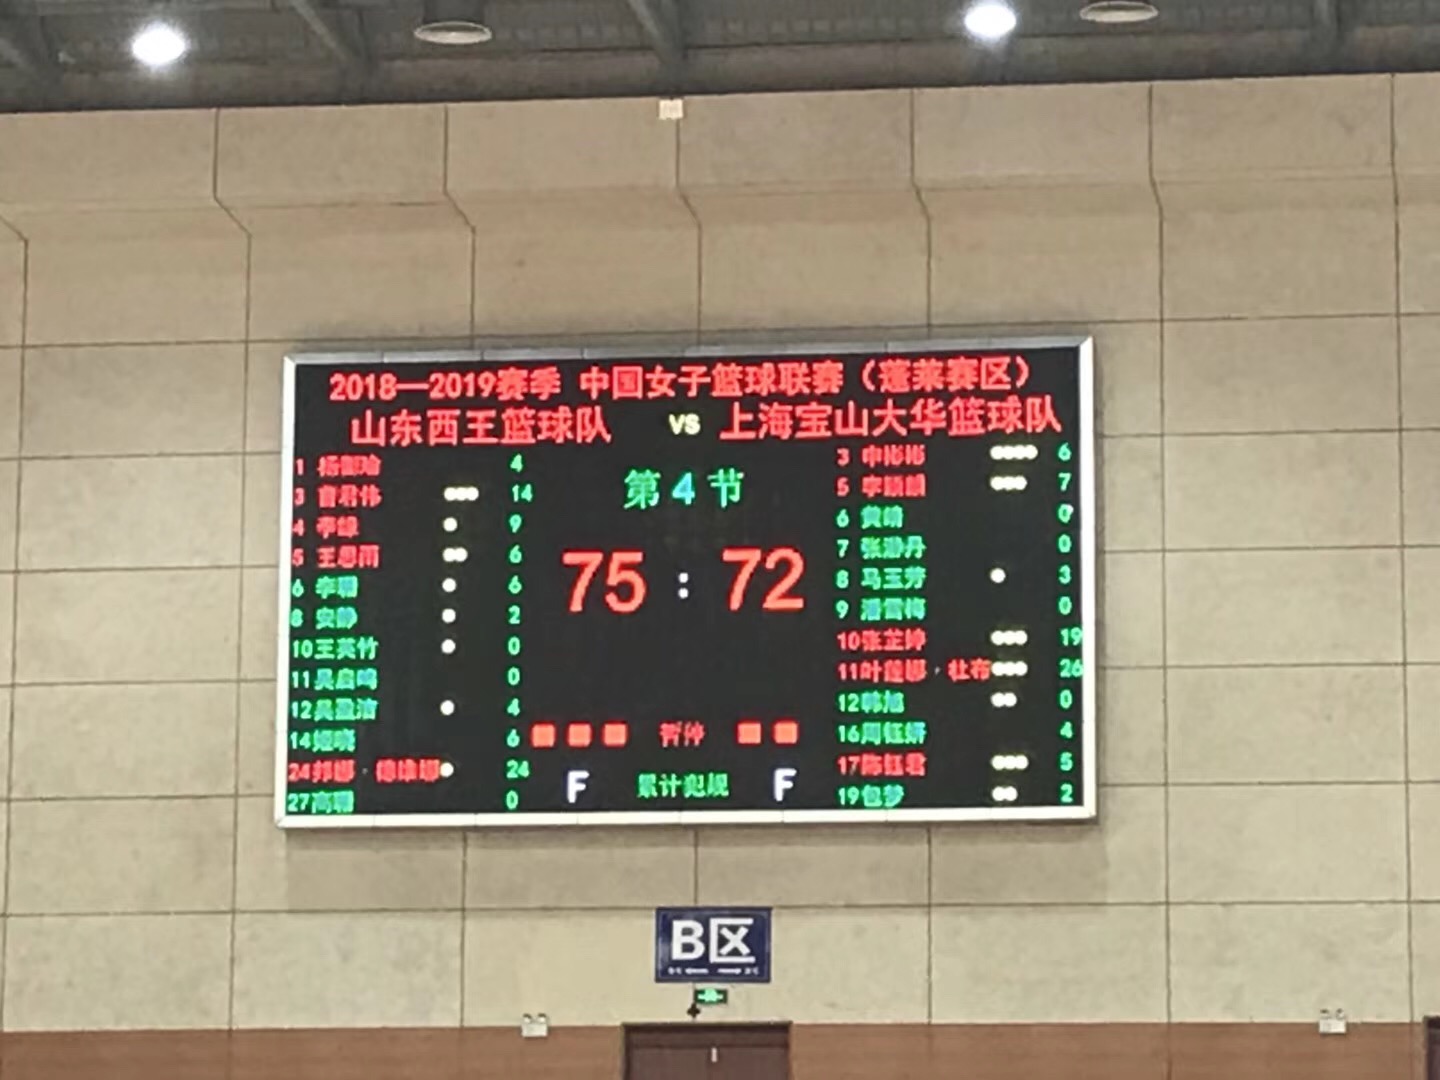 曹君伟14分 山东西王女篮主场75-72险胜上海